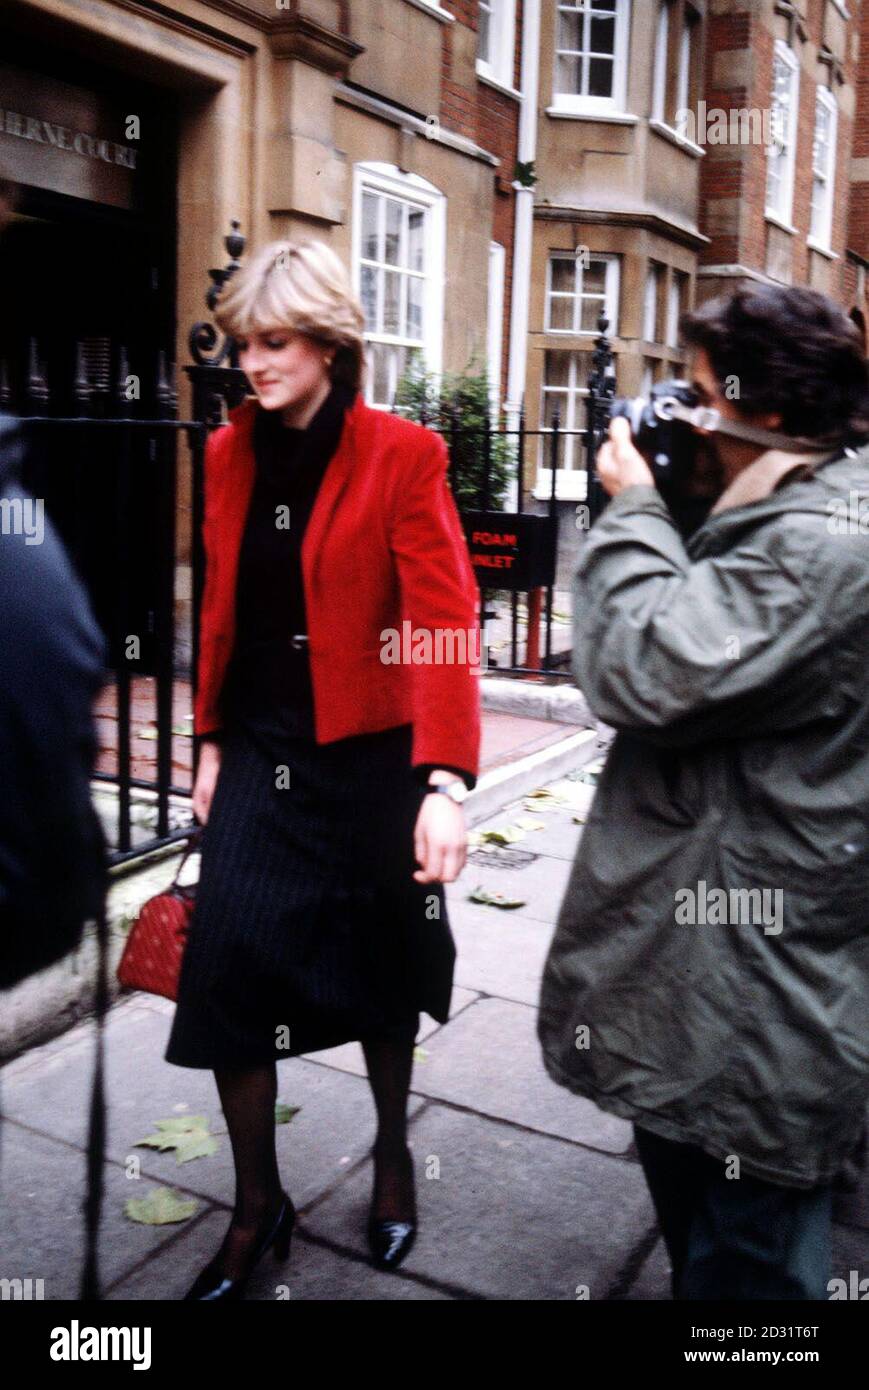 LADY DIANA SPENCER 1980: Lady Diana Spencer, 19 ans, la plus jeune fille d'Earl Spencer, poursuivie par la presse près de sa maison de Knightsbridge après avoir spéculé qu'elle est romantiquement impliquée avec le prince de Galles. Banque D'Images